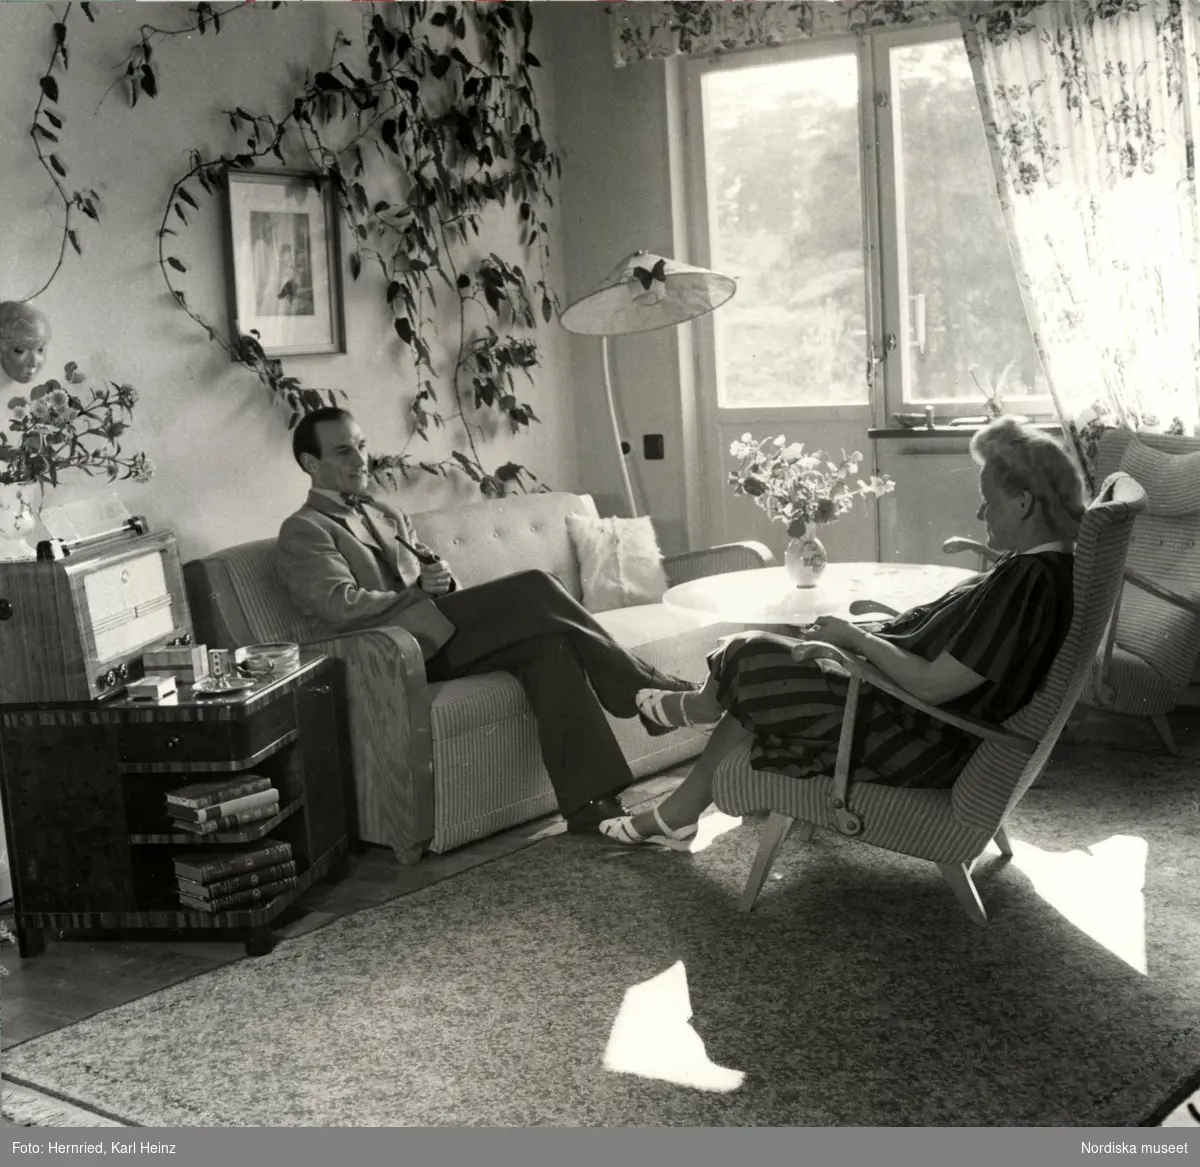 Interiör. Vardagsrum där en kvinna och en man sitter och samtalar, i soffa respektive fåtölj.